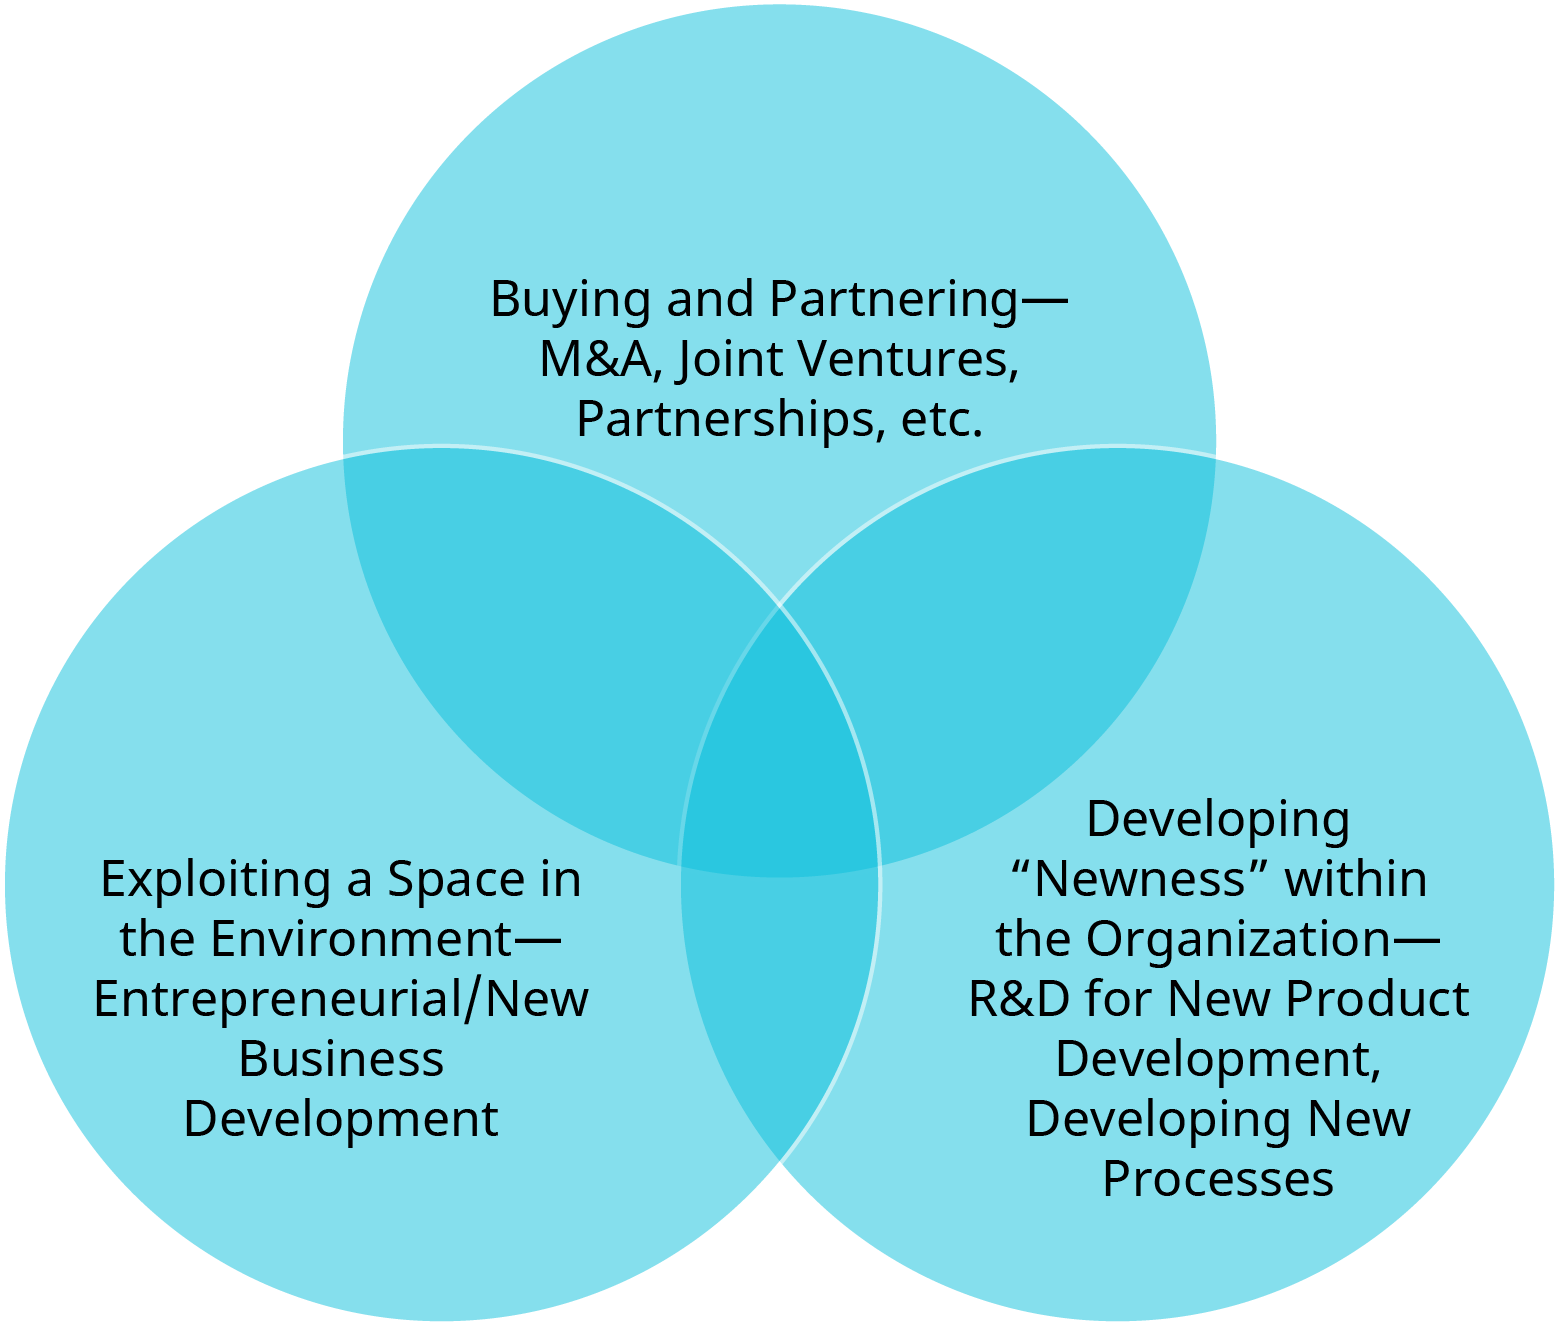 图表显示了创造新技术和创新的三种方法。